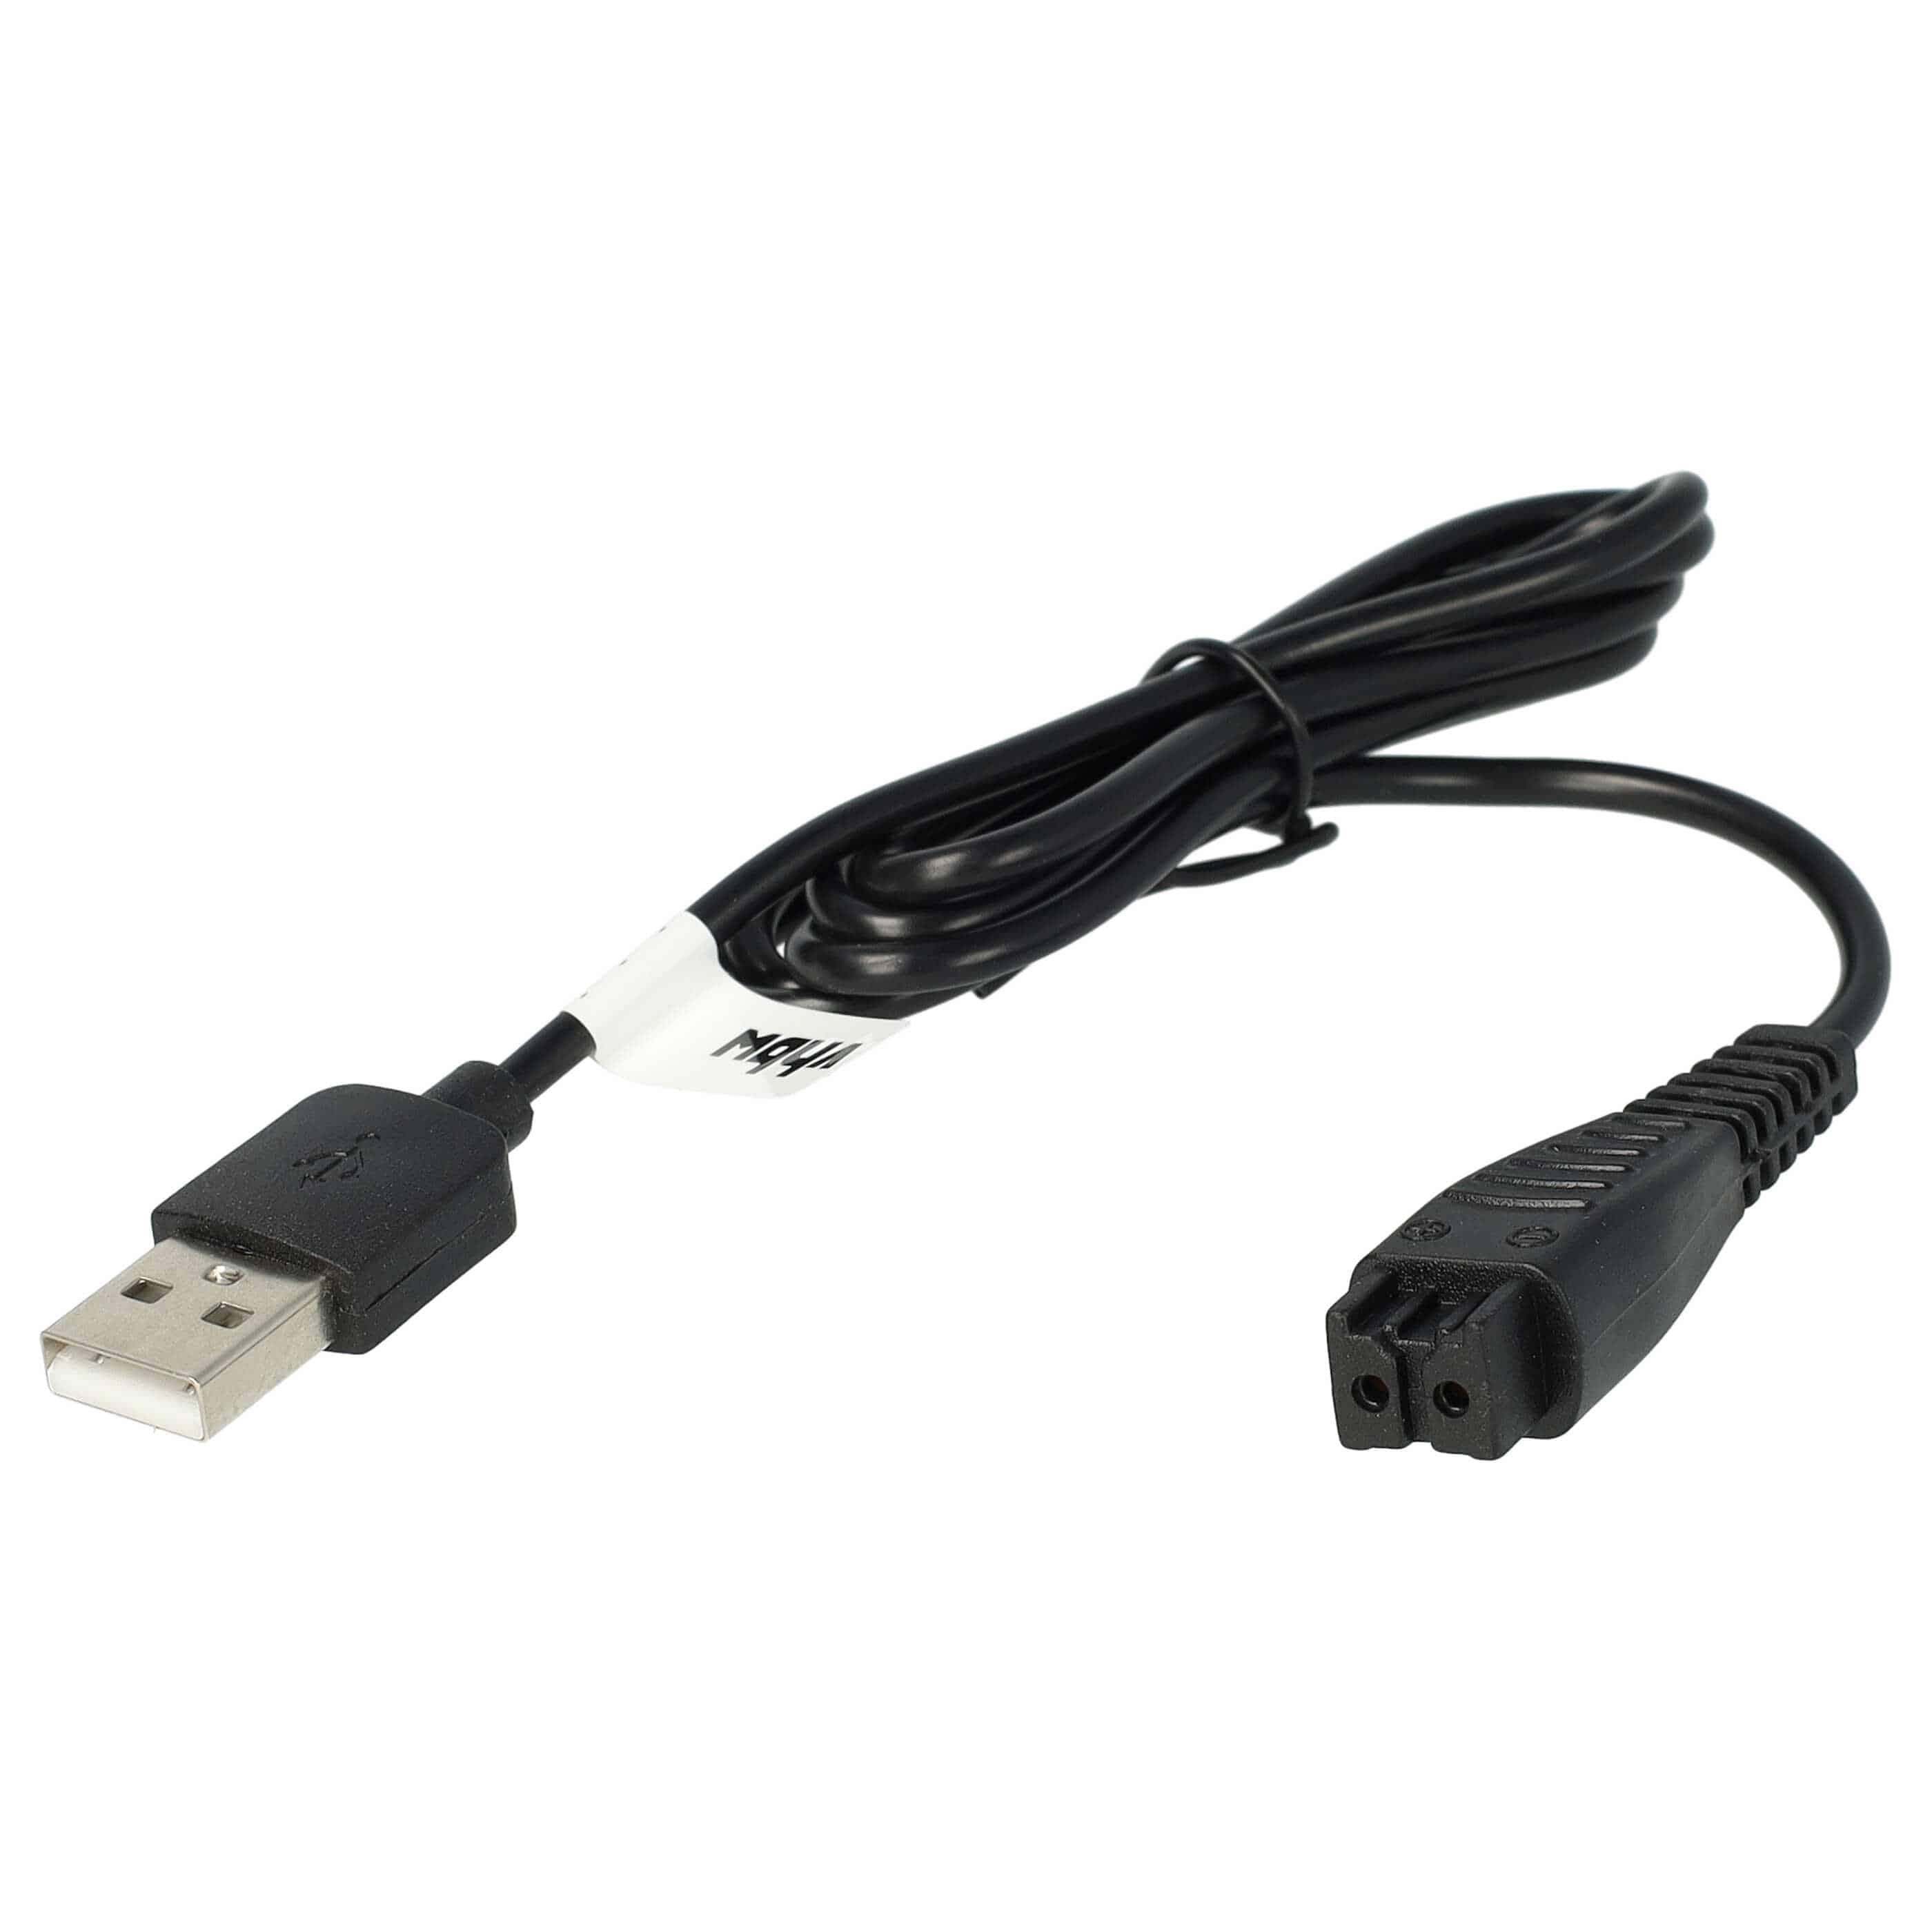 USB Ladekabel als Ersatz für Panasonic RE7-59, RE7-68, RE7-51, RE7-40 für Panasonic Rasierer - 120 cm